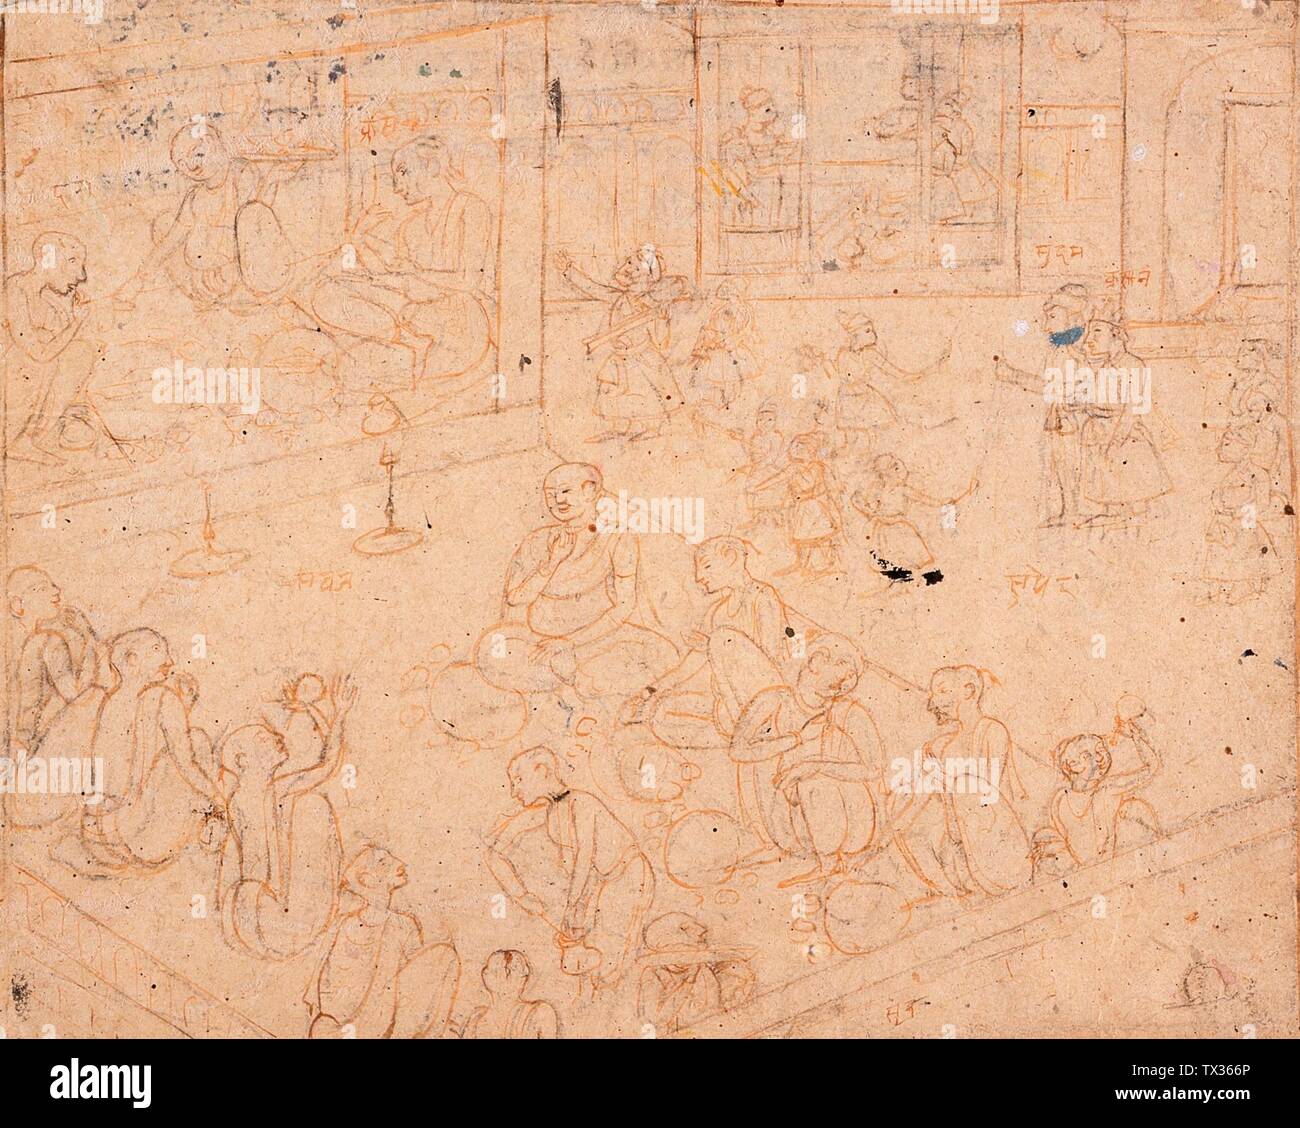 Fiesta para Brahmins; India, Himachal Pradesh, Kangra, 1780-1800 dibujos tinta y acuarela opaco en papel Imagen: 8 1/4 x 10 1/8 pulg. (20.95 x 25.72 cm); Hoja: 9 12 x 3/4 pulg. (24.76 x 30.48 cm) Regalo de Paul F. Walter (M.75.113.5) Arte del Sur y del Sudeste Asiático; entre 1780 y 1800 fecha QS:P571,+1500-00-00T00:00:00Z/6,P1319,+1780-00-00T00:00:00Z/9,P1326,+1800-00-00T00:00:00Z; Foto de stock